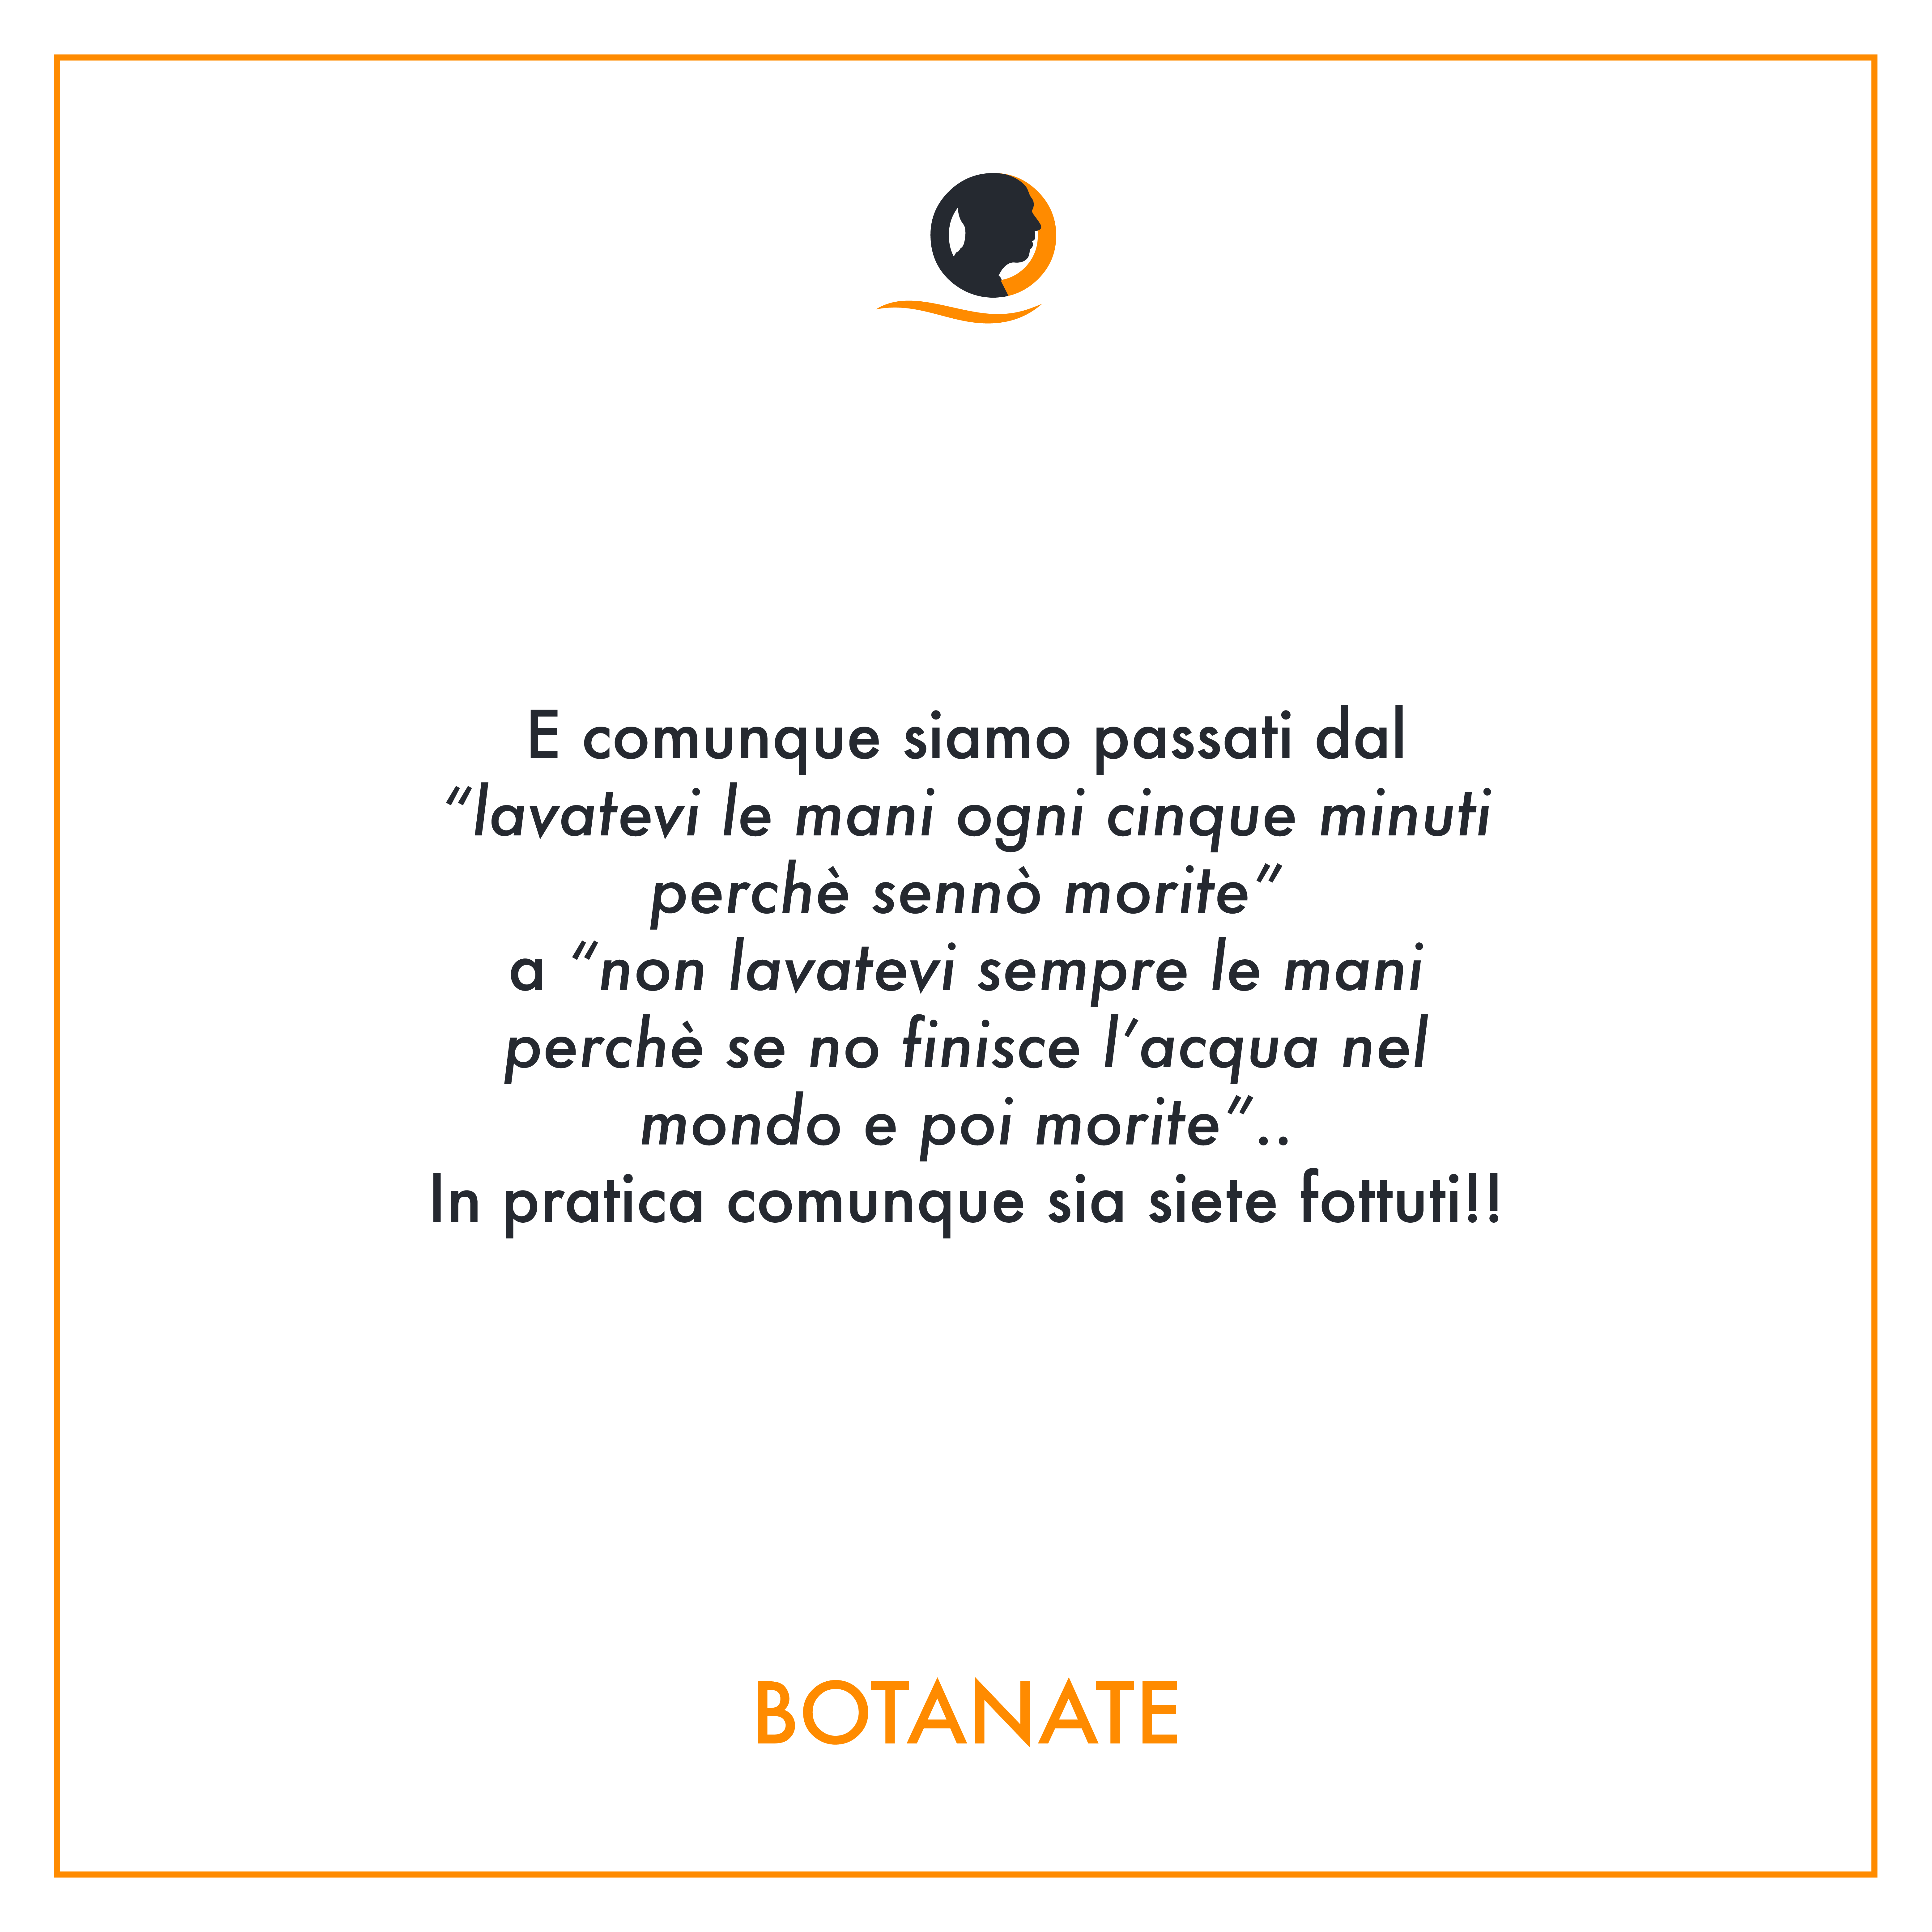 Botanate - Gianluca Bota